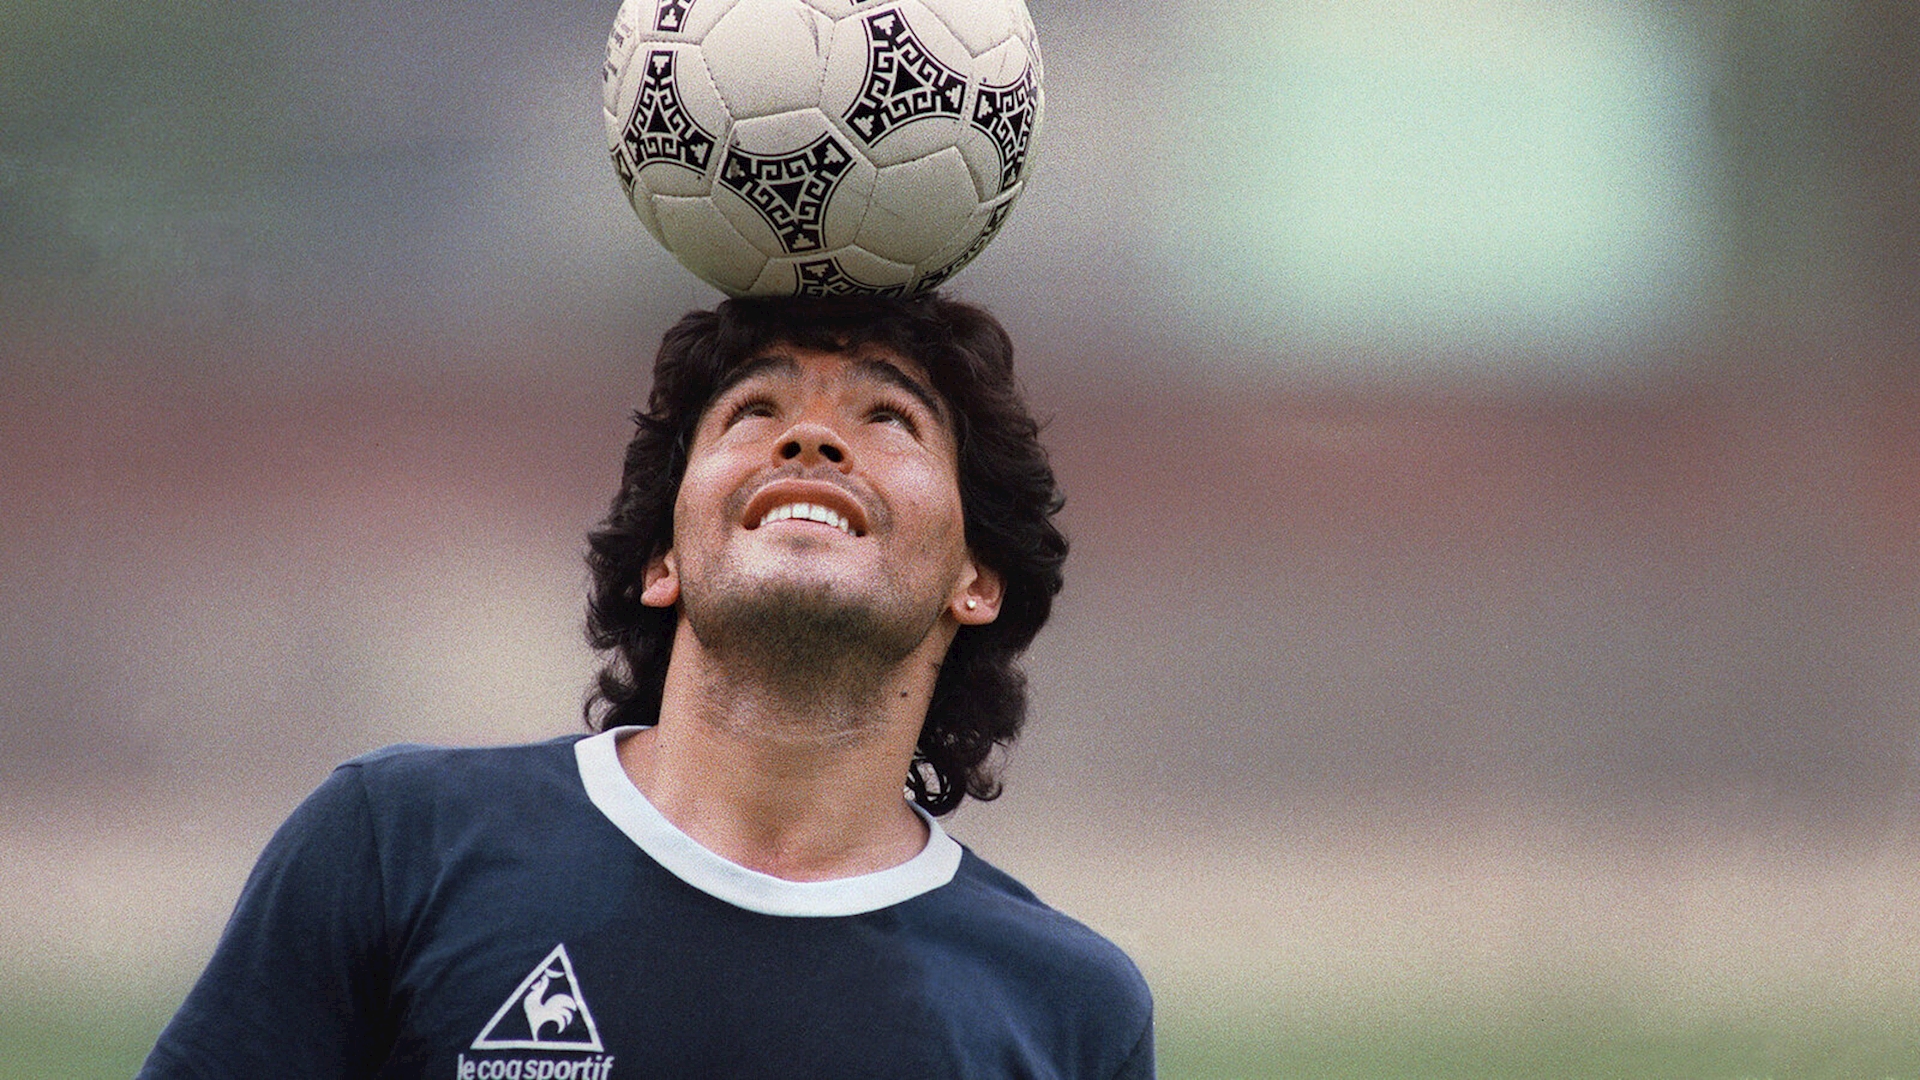 Tiểu sử sự nghiệp của cố cầu thủ Maradona